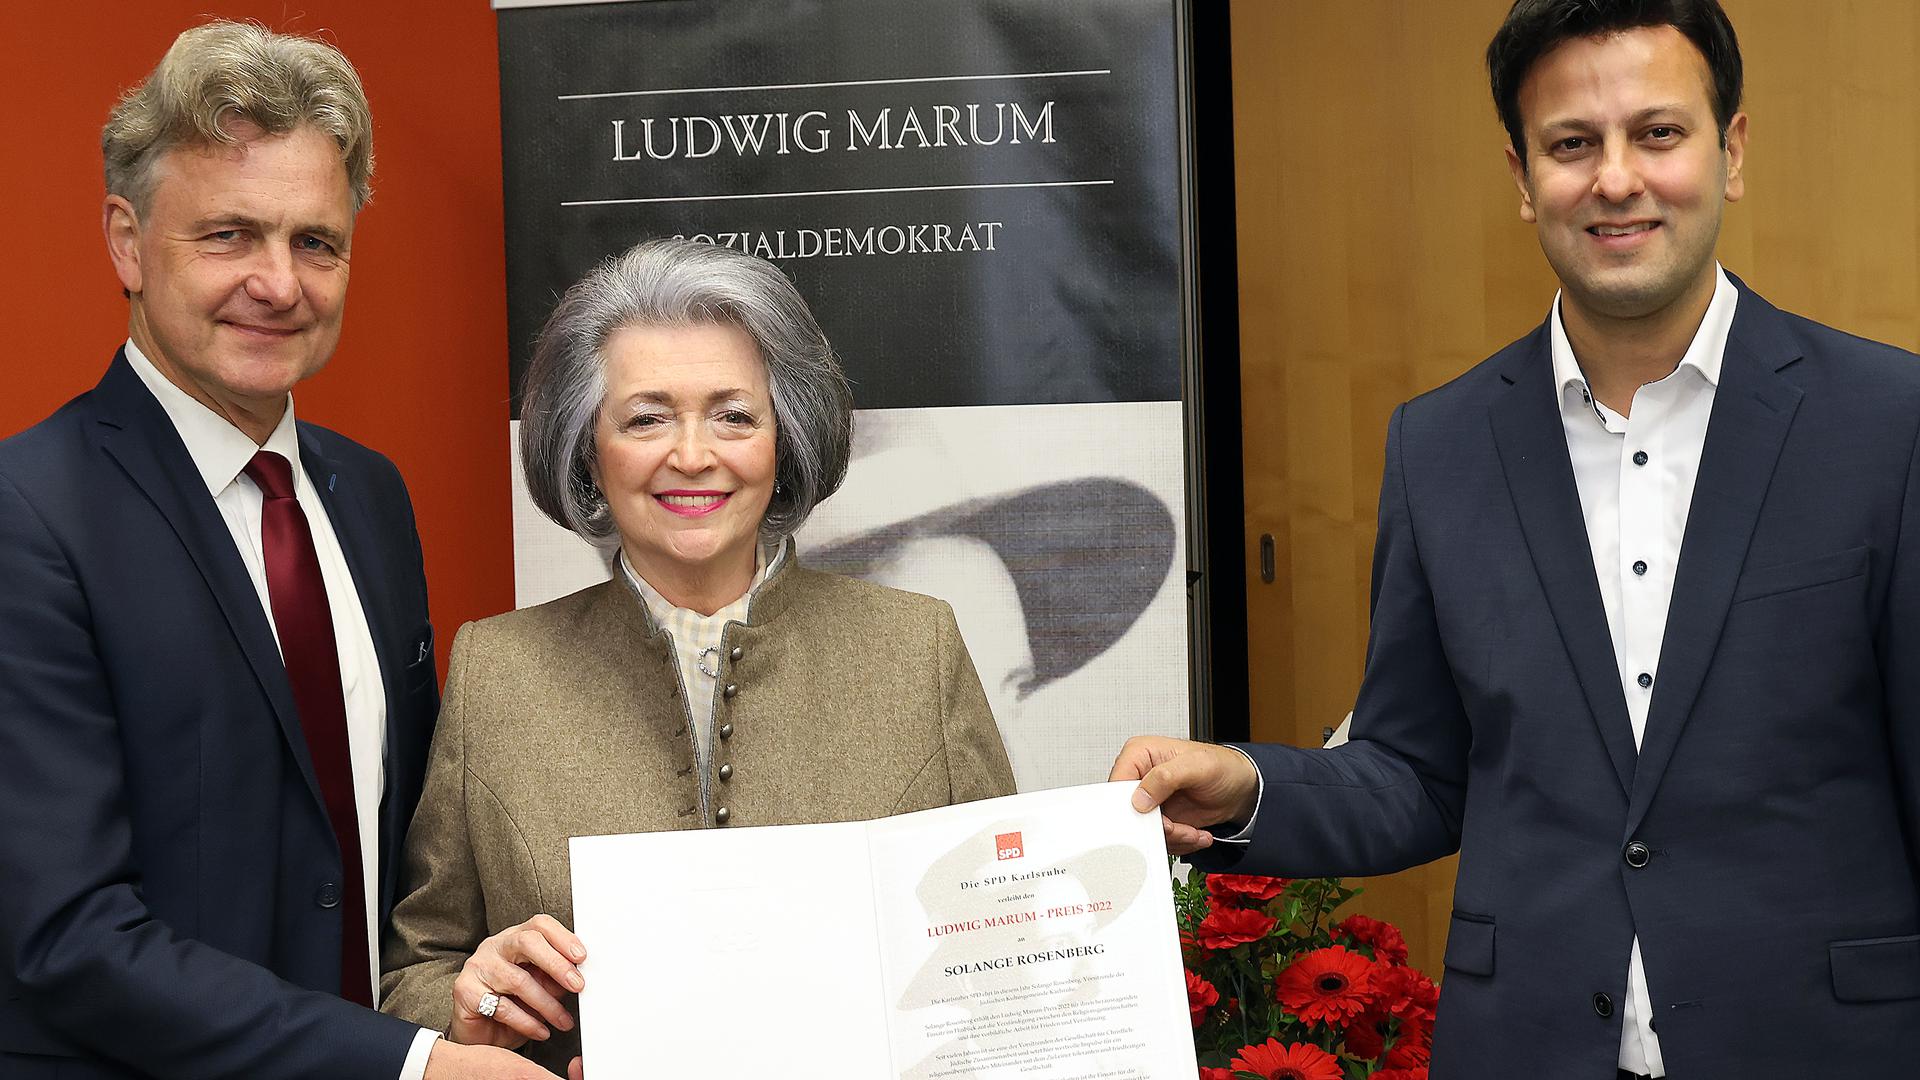 Glückliche Preisträgerin: Solange Rosenberg umrahmt von OB Frank Mentrup (links) und dem SPD-Bundestagsabgeordneten Parsa Marvi.